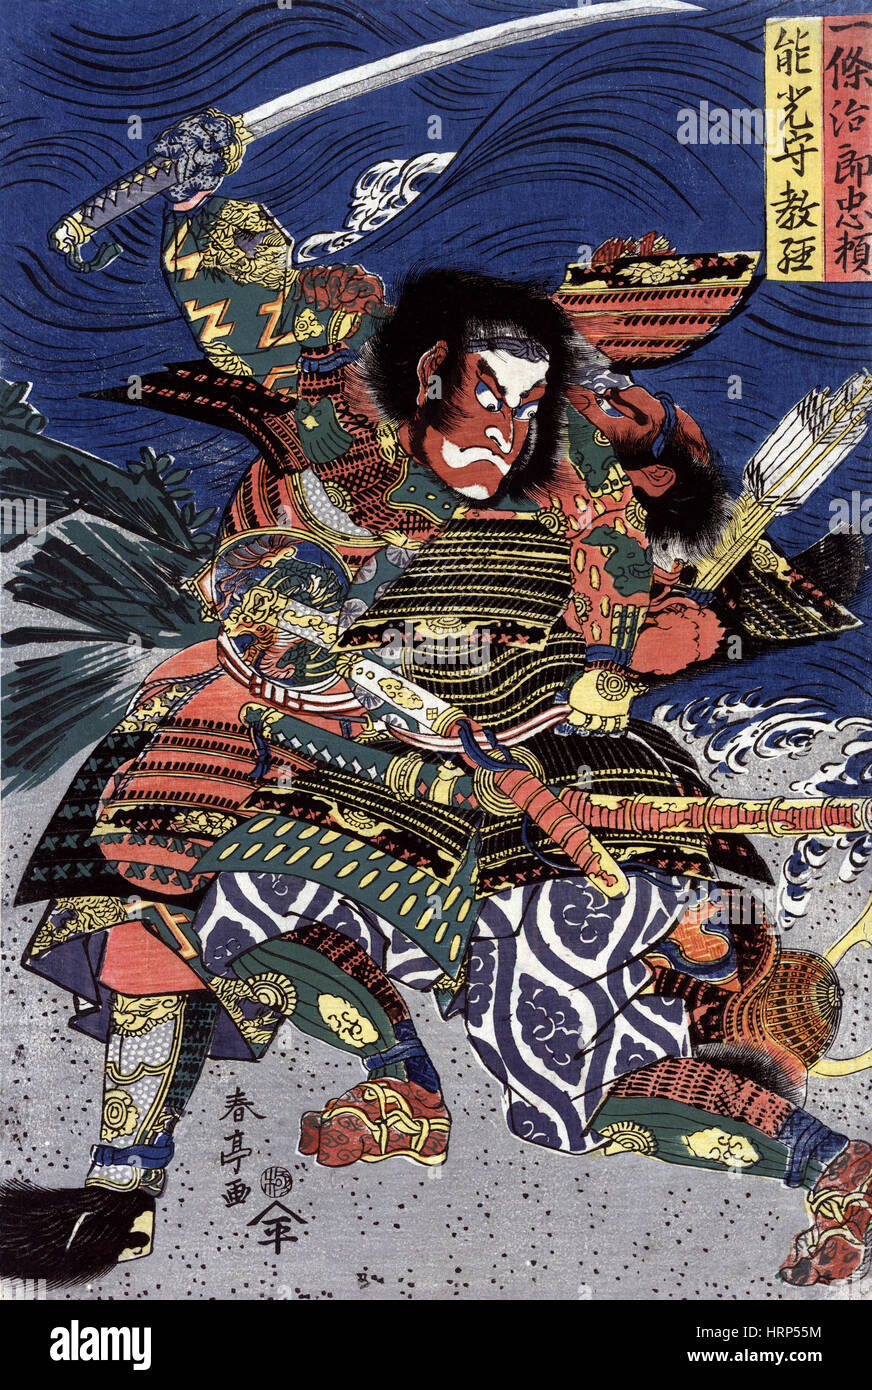 Samurai Warriors Fighting Stock Photo